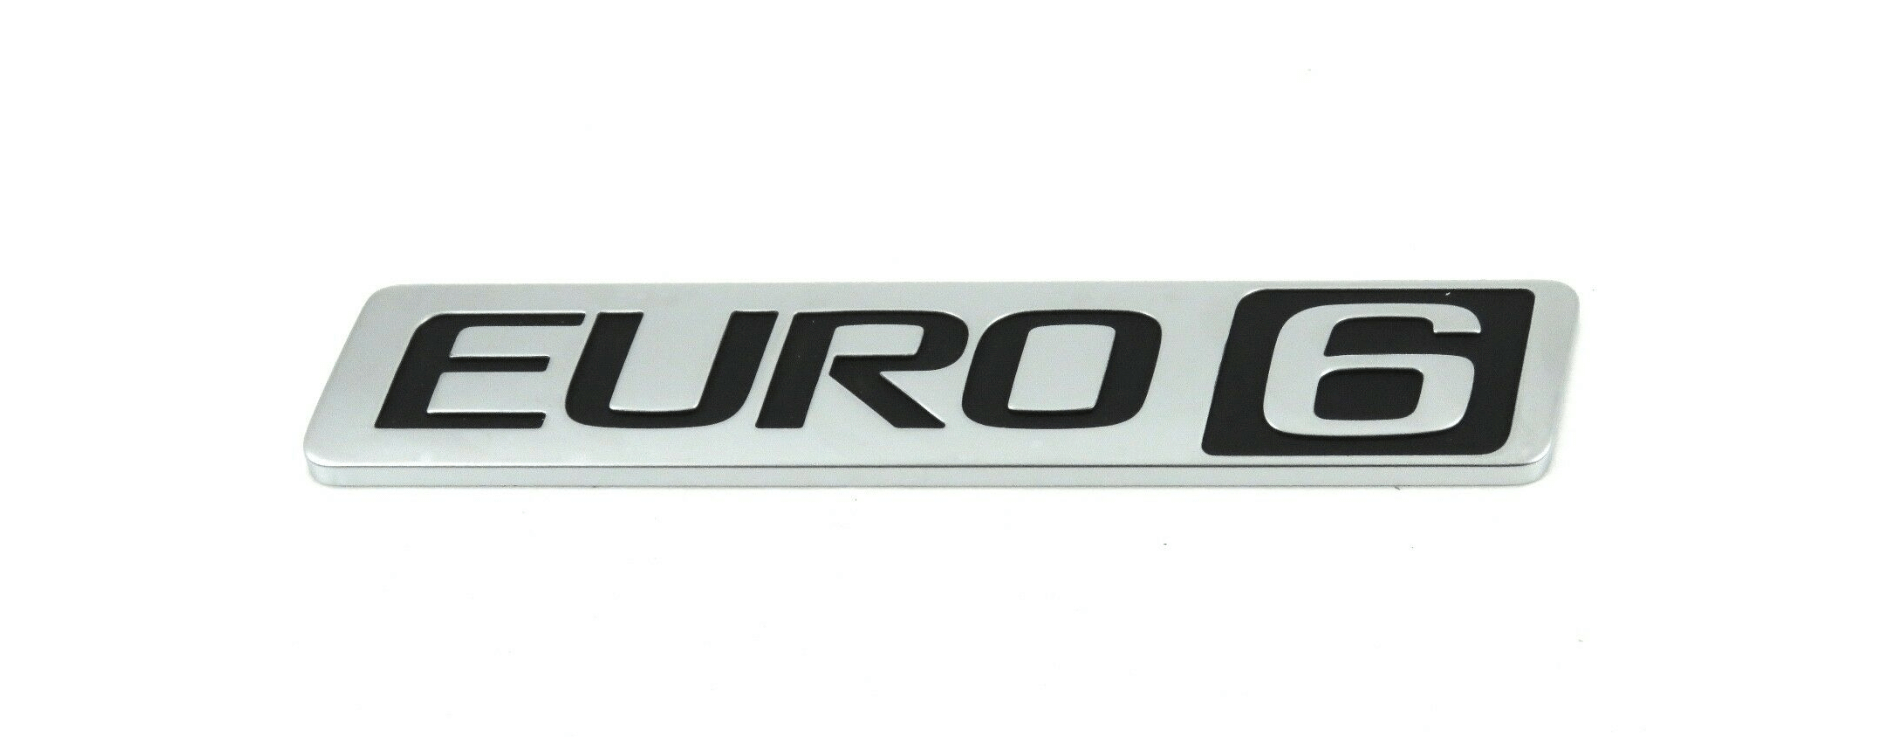 Euro 6 logo